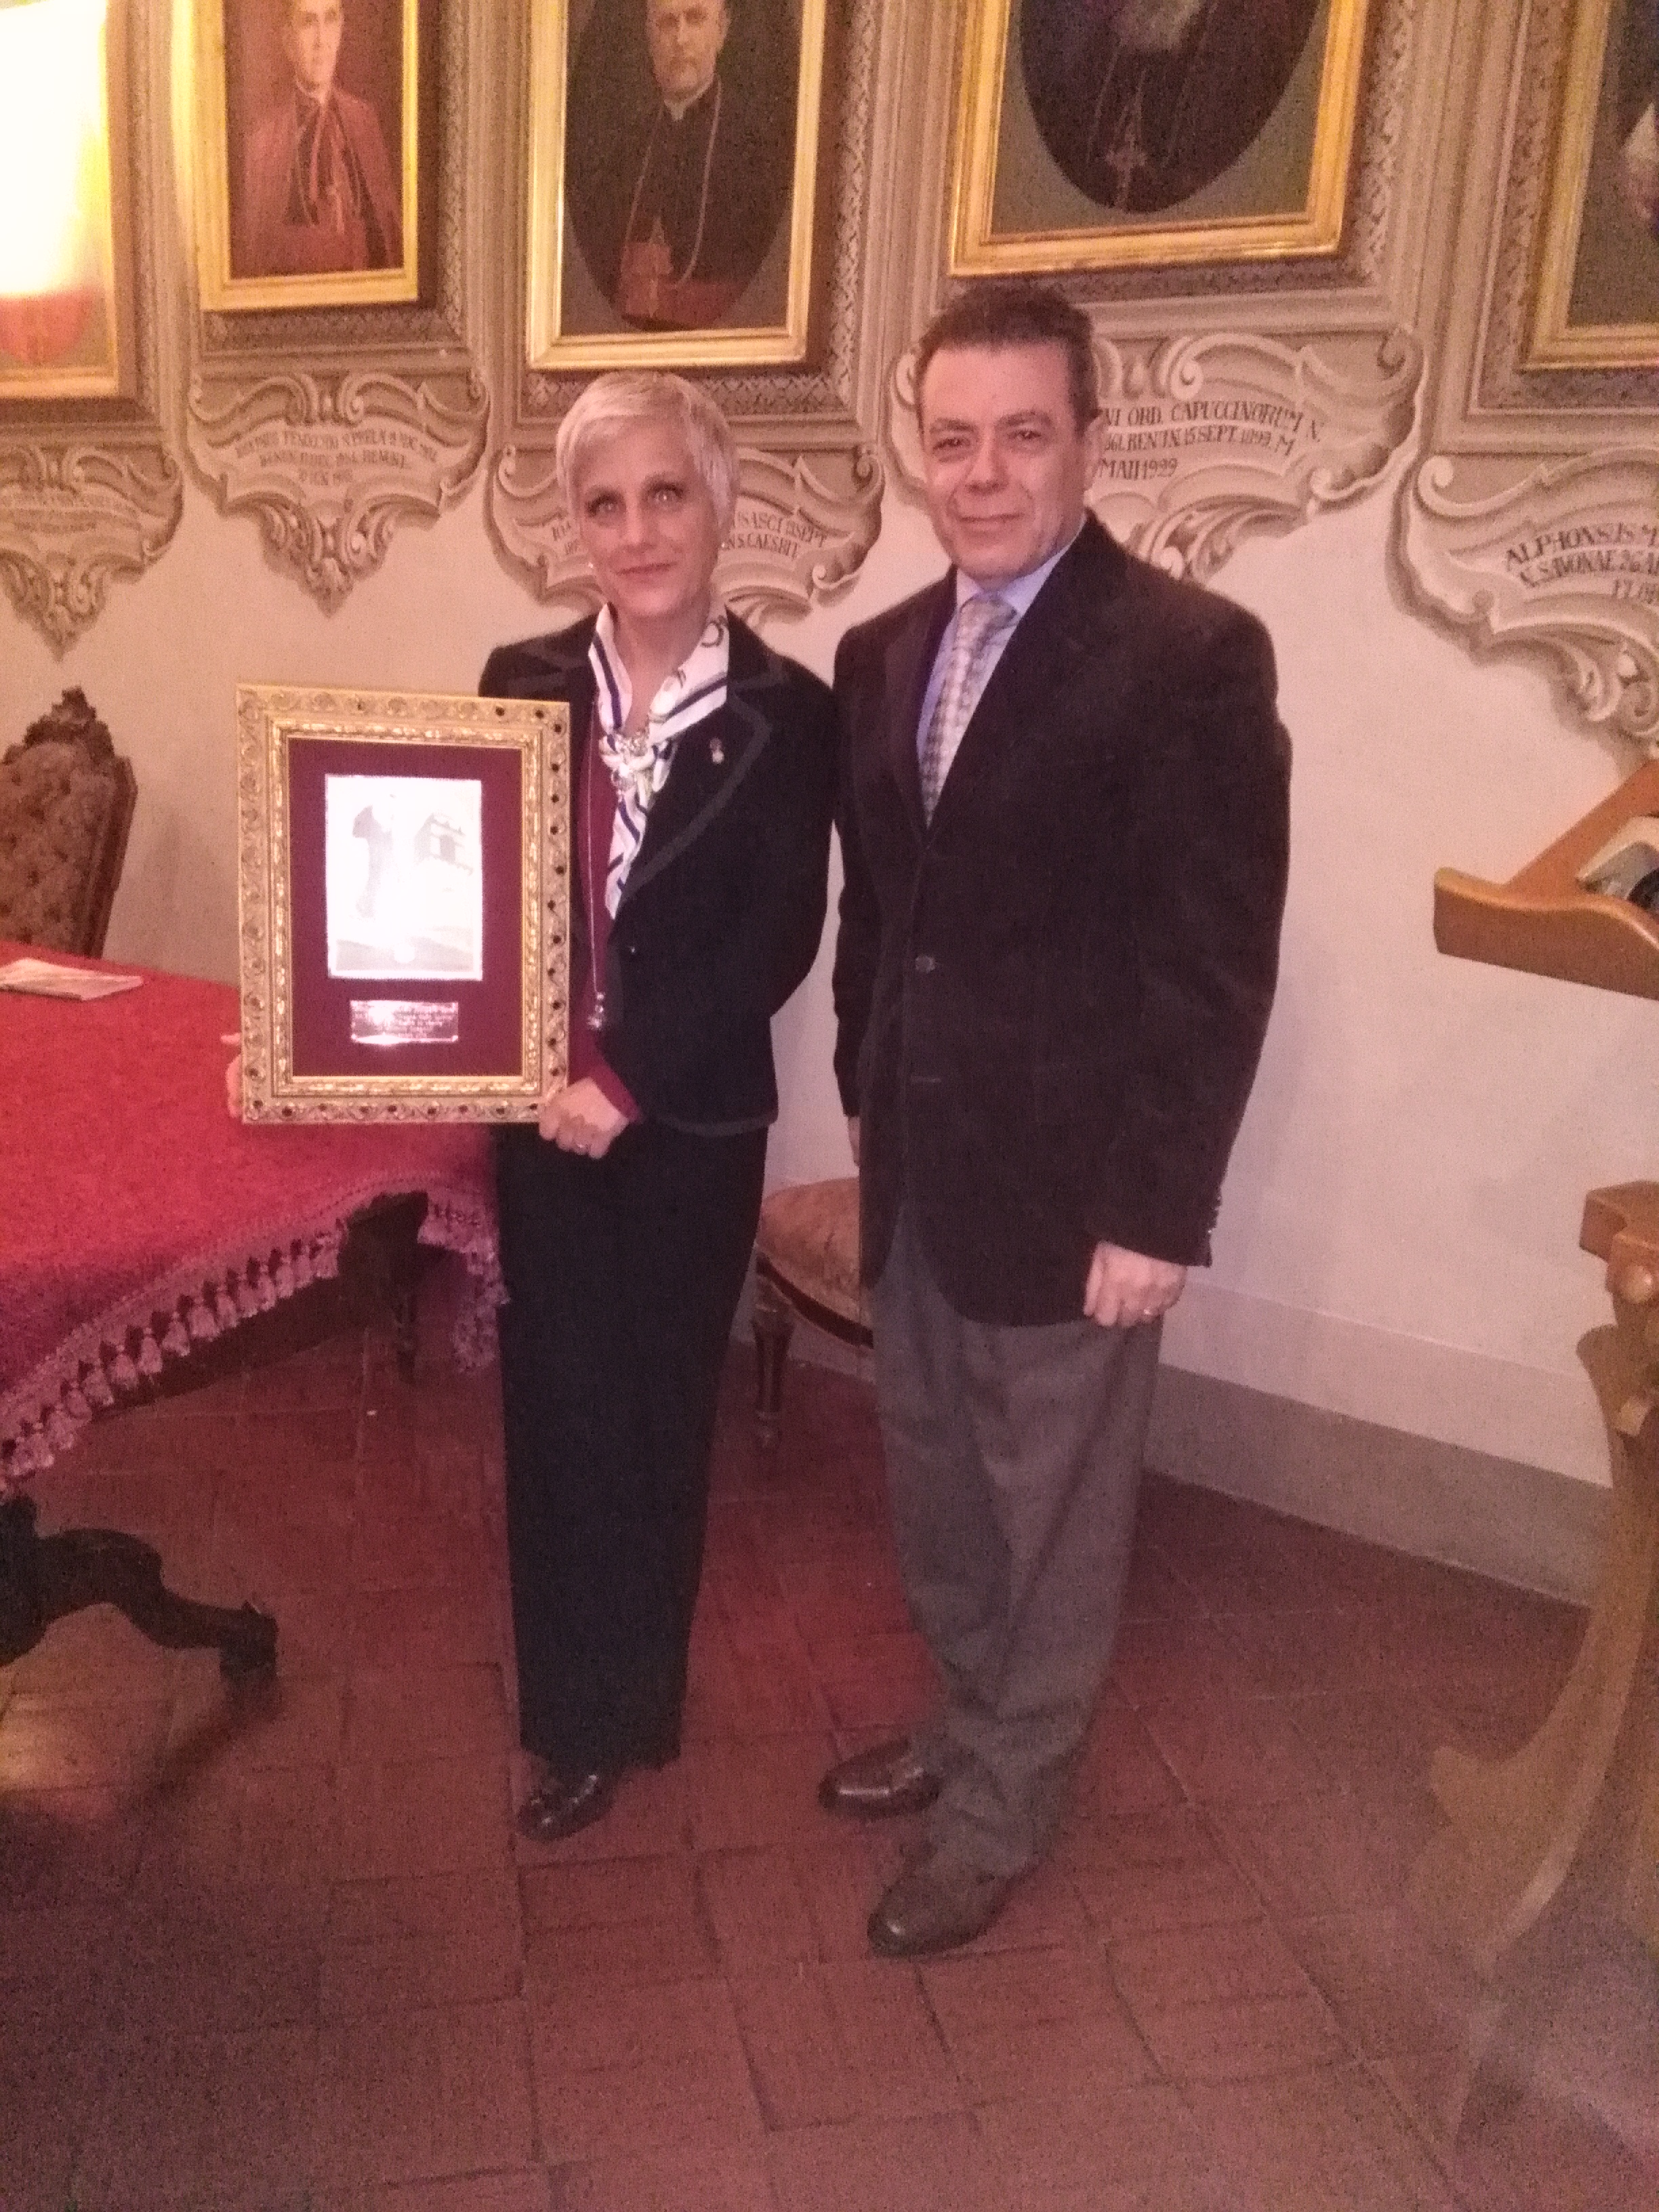 L'Autore Antonio Spagnoli mostra il riconoscimento accanto alla dottoressa Patrizia Rossi della Commissione cultura del Premio 